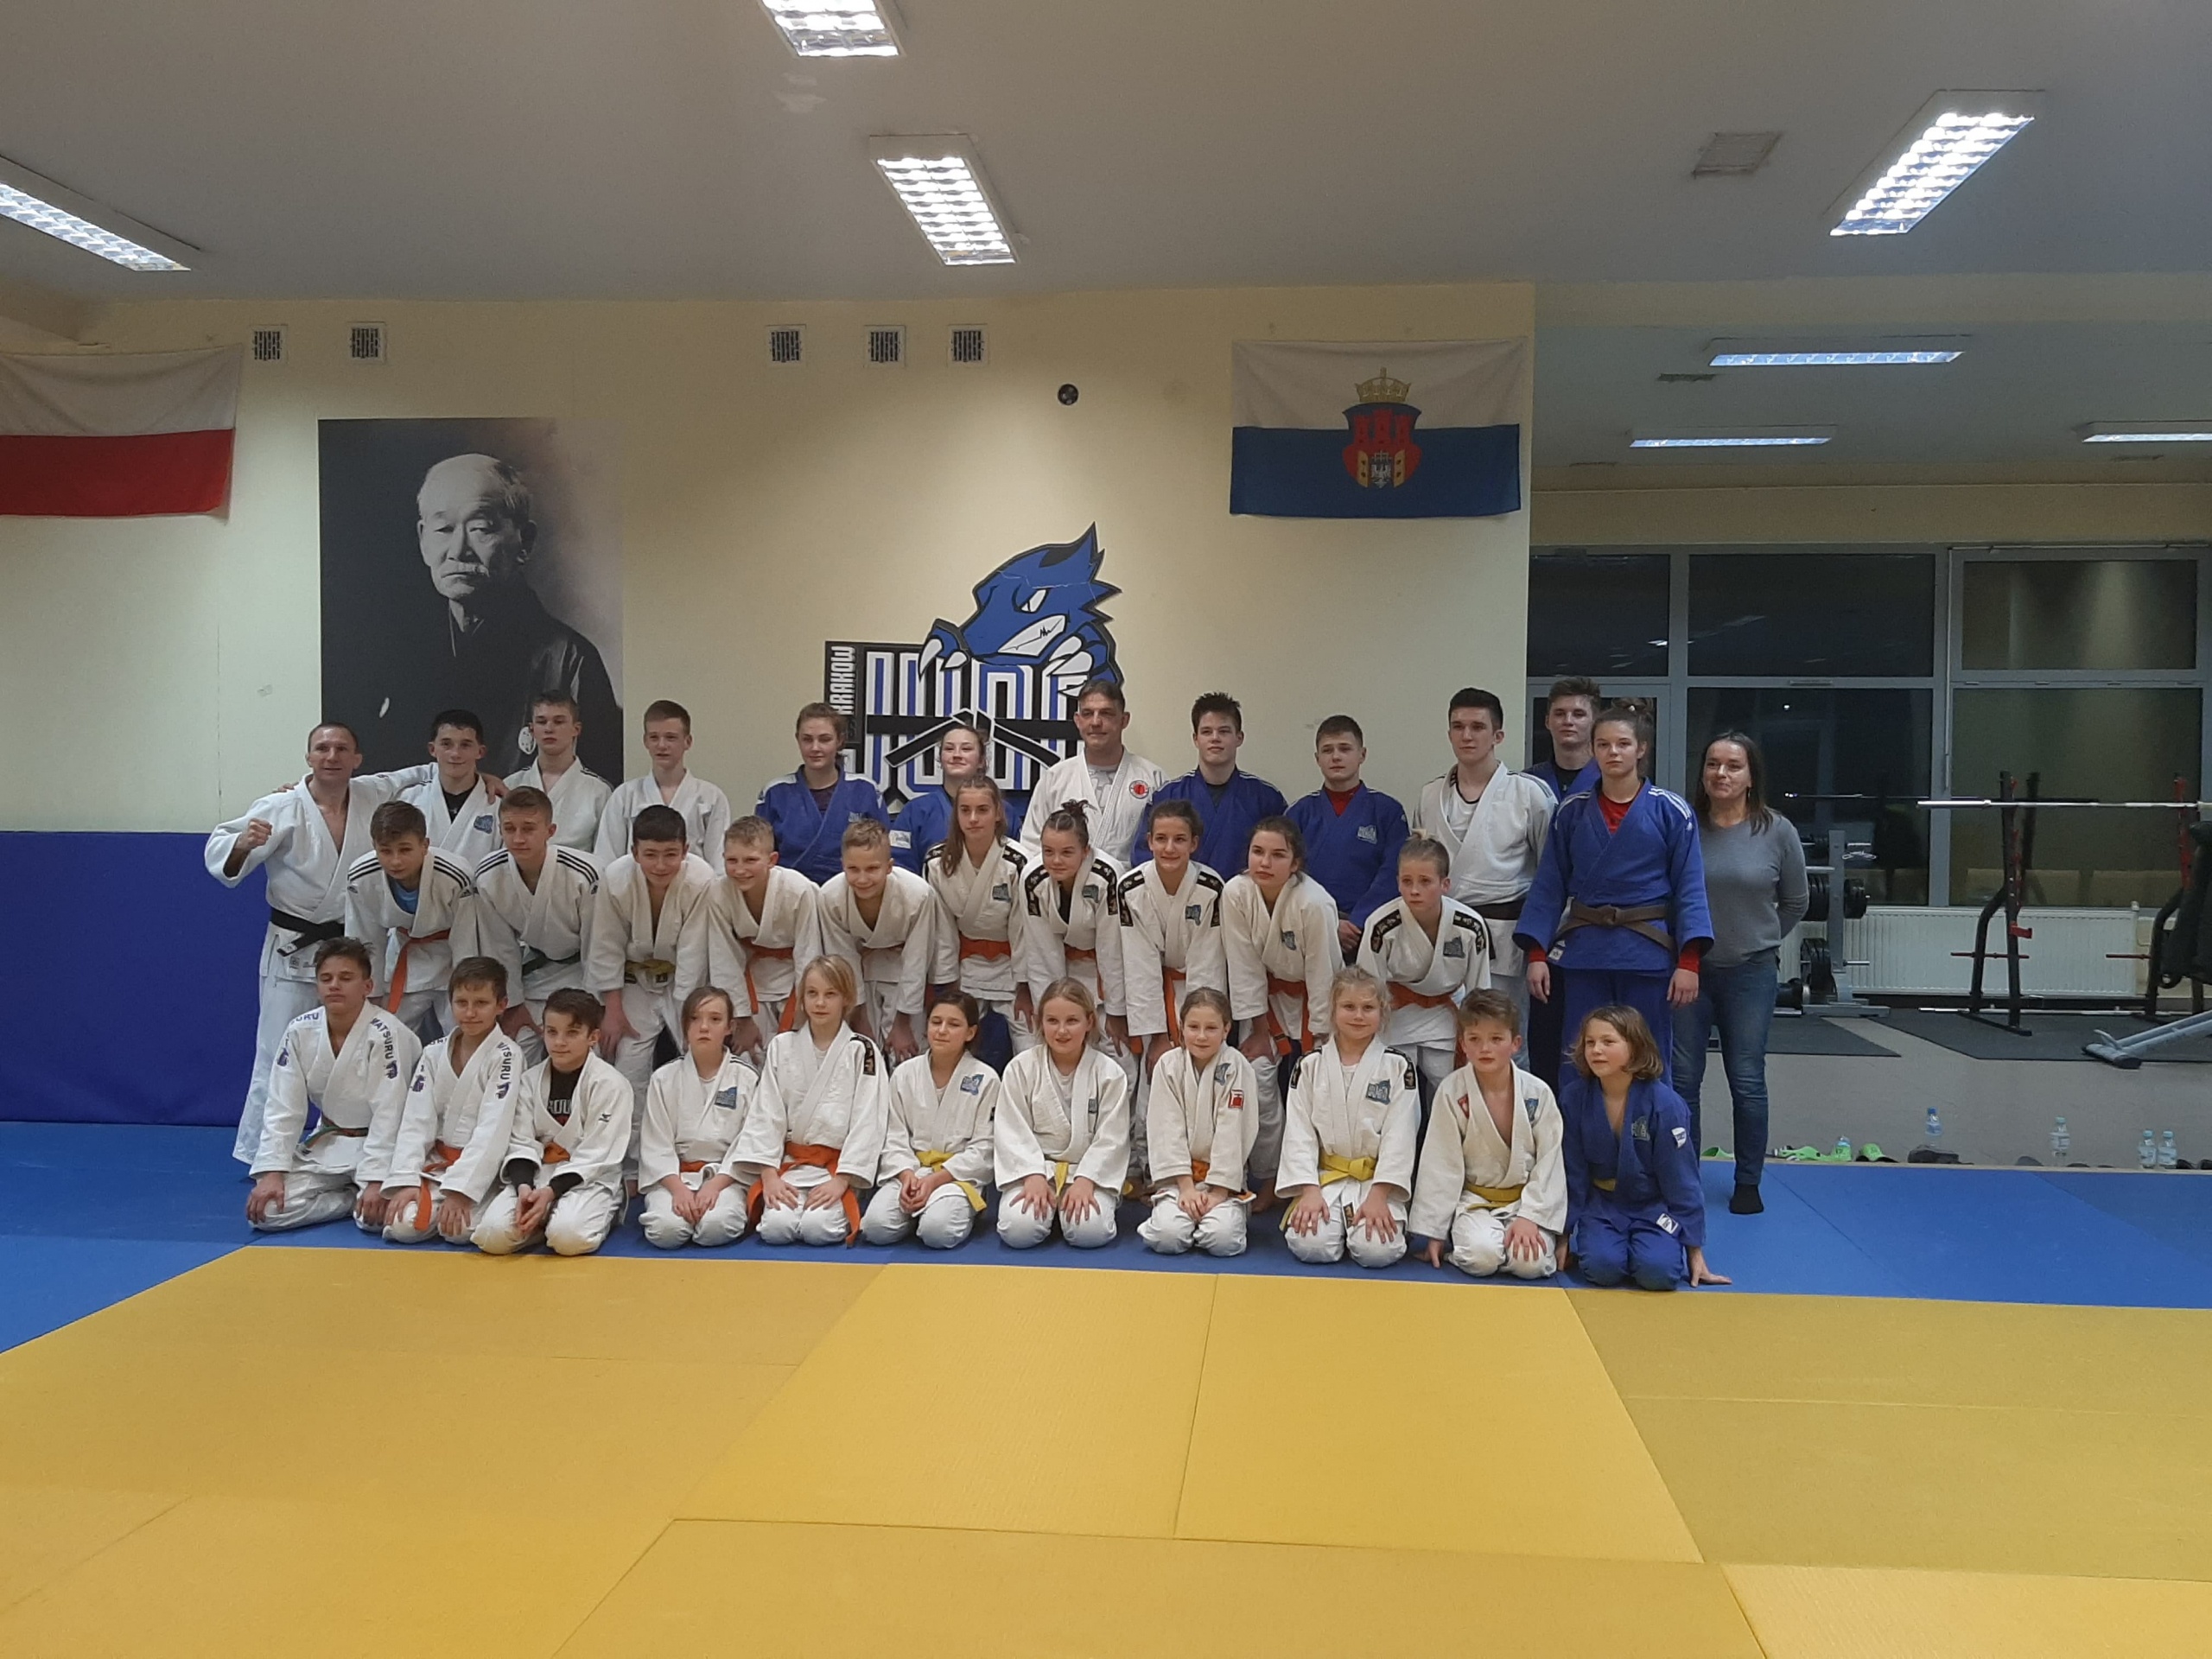 Drugi tydzień ferii rozpoczęliśmy ćwicząc z Mistrzami Judo!